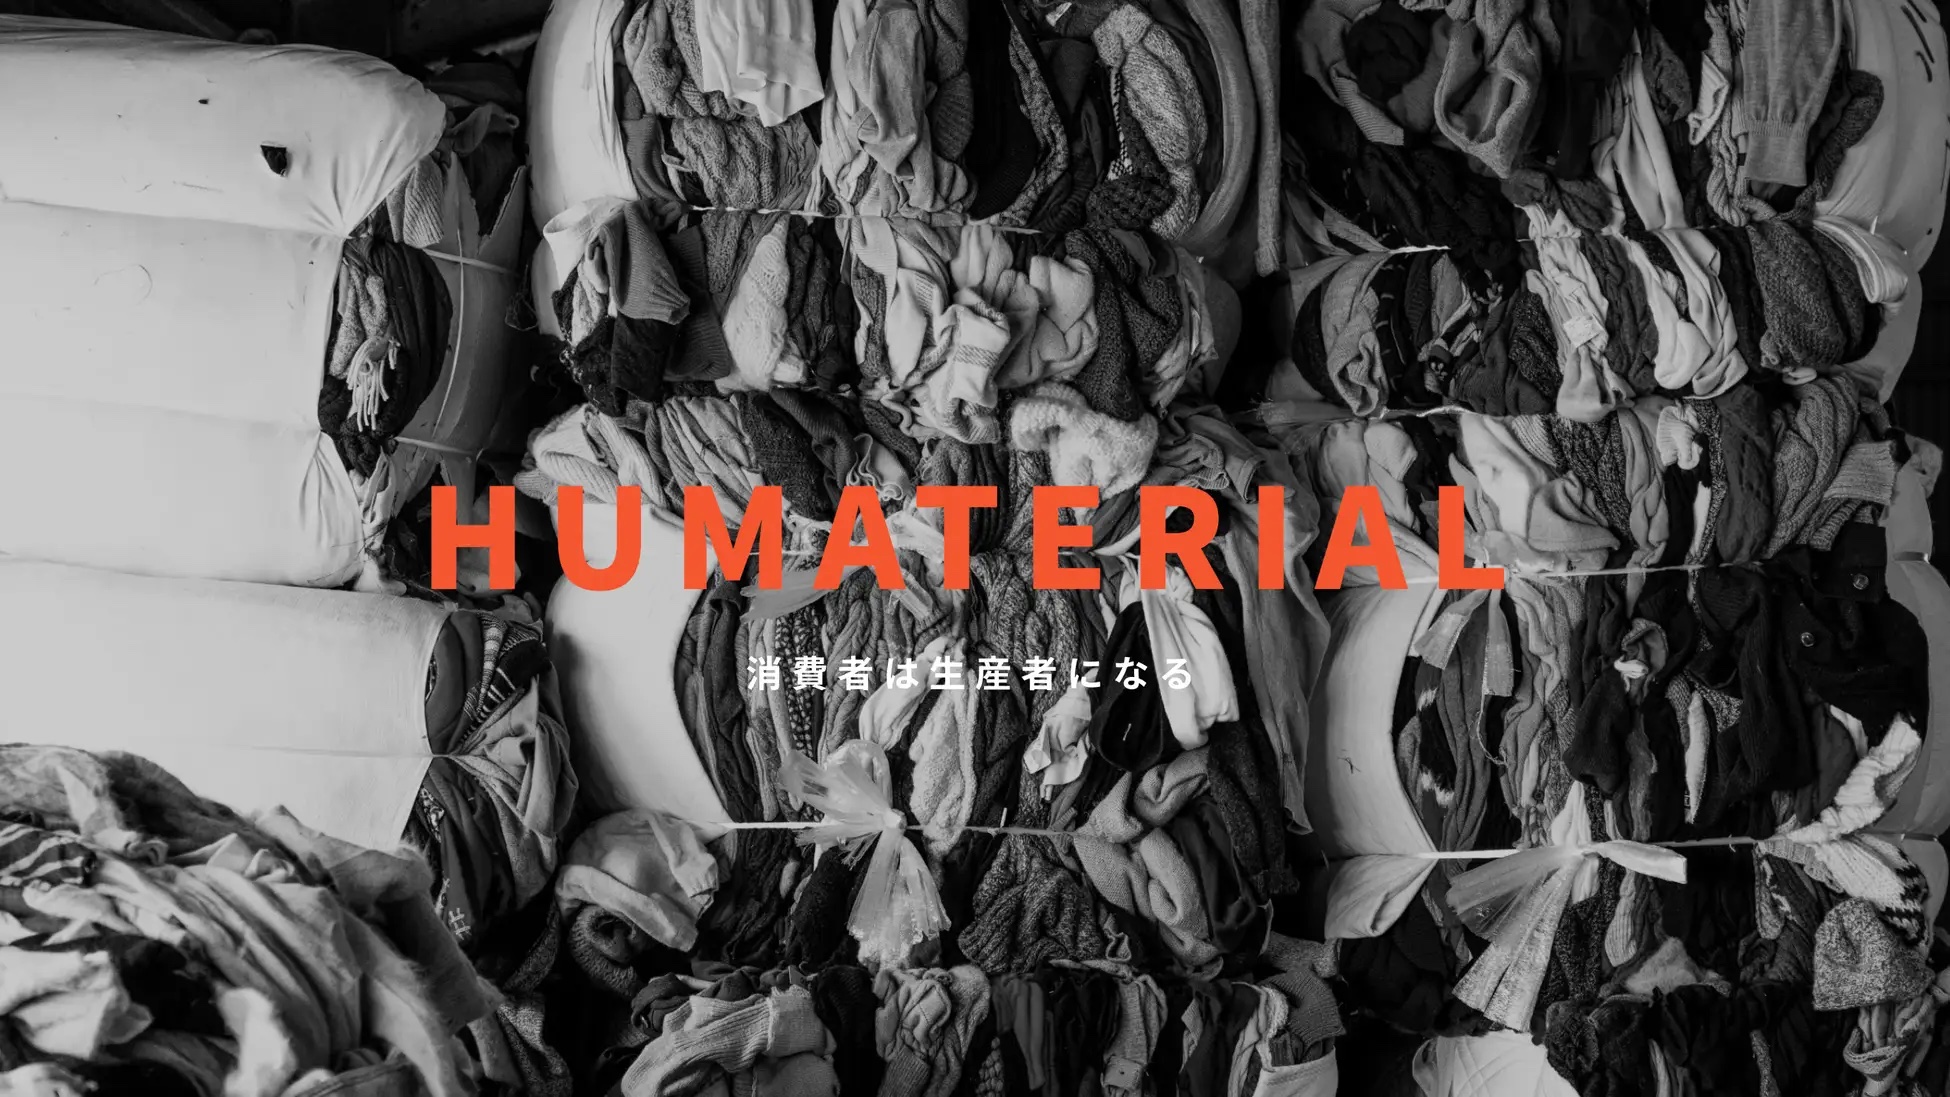 持続可能なファッションを追求、「HUMATERIAL」プロジェクト始動